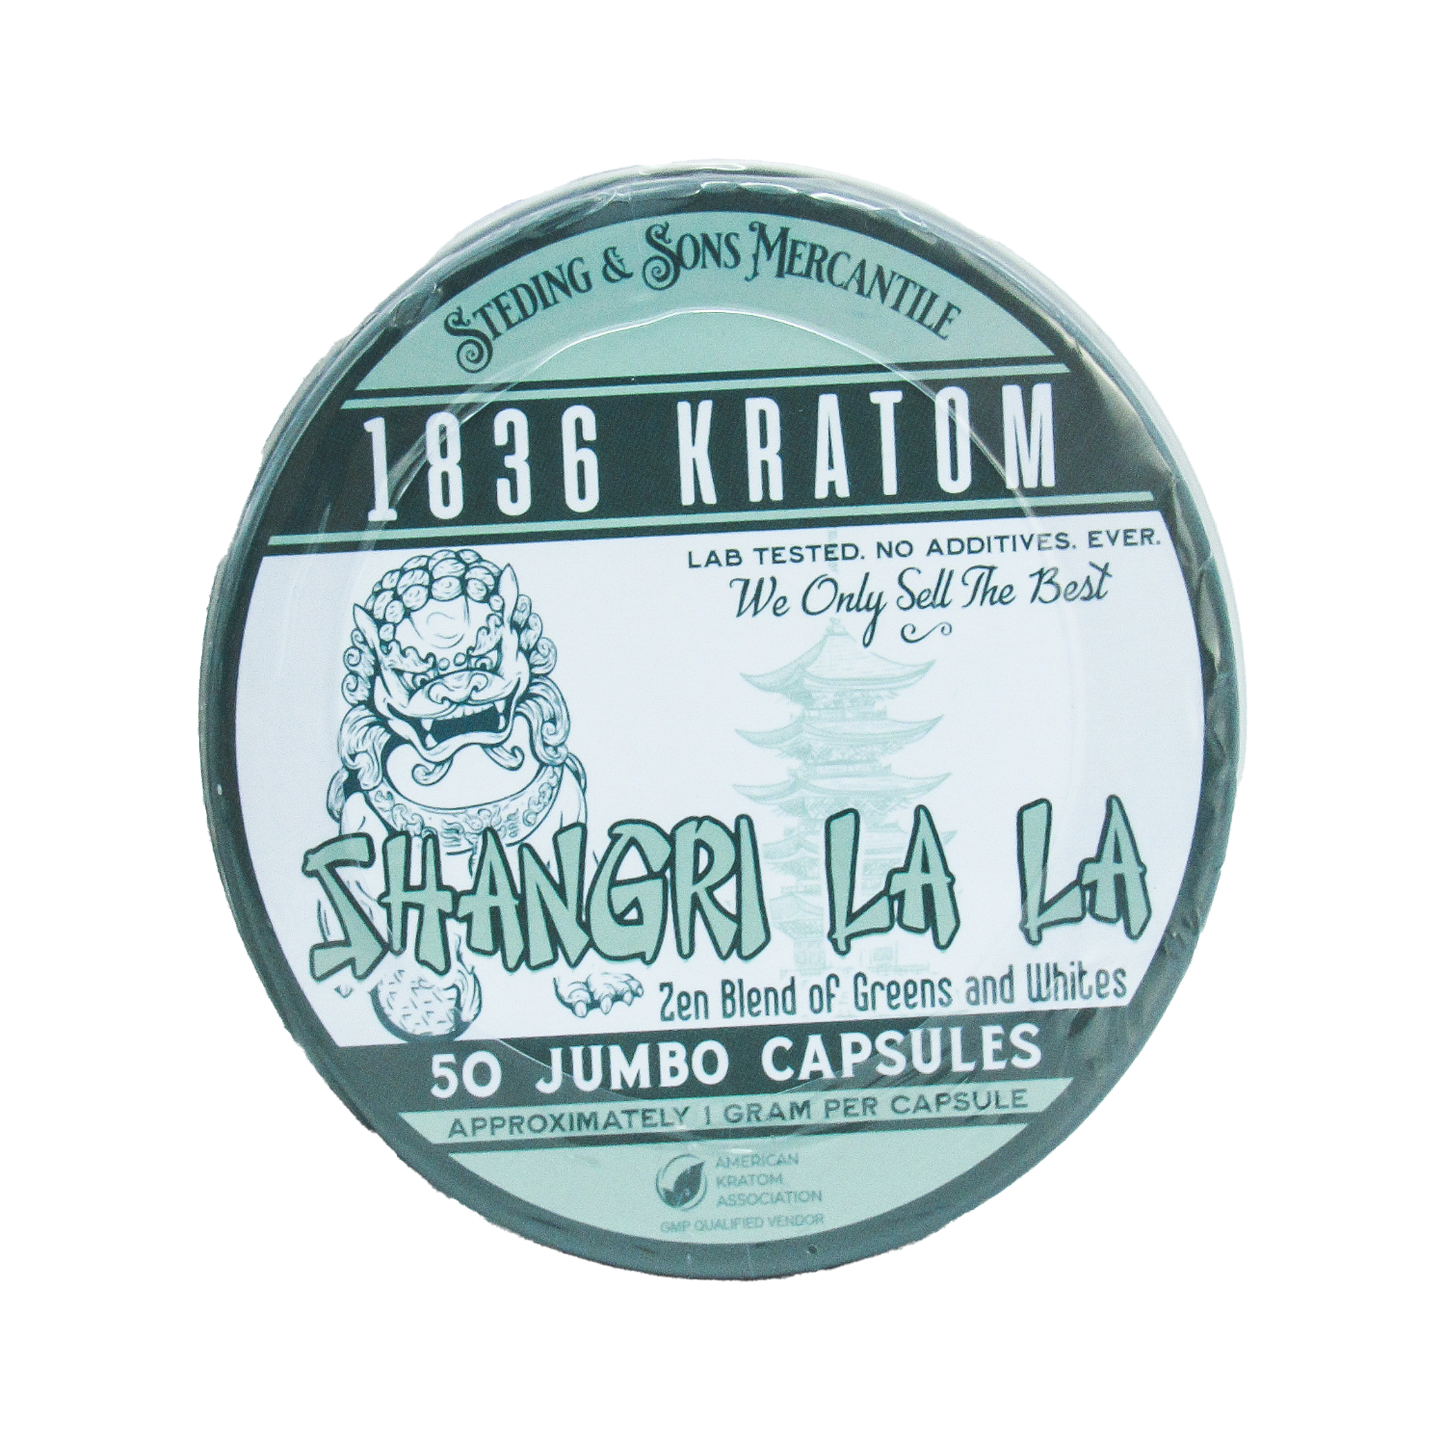 1836 Kratom Capsules - Shangri Lala